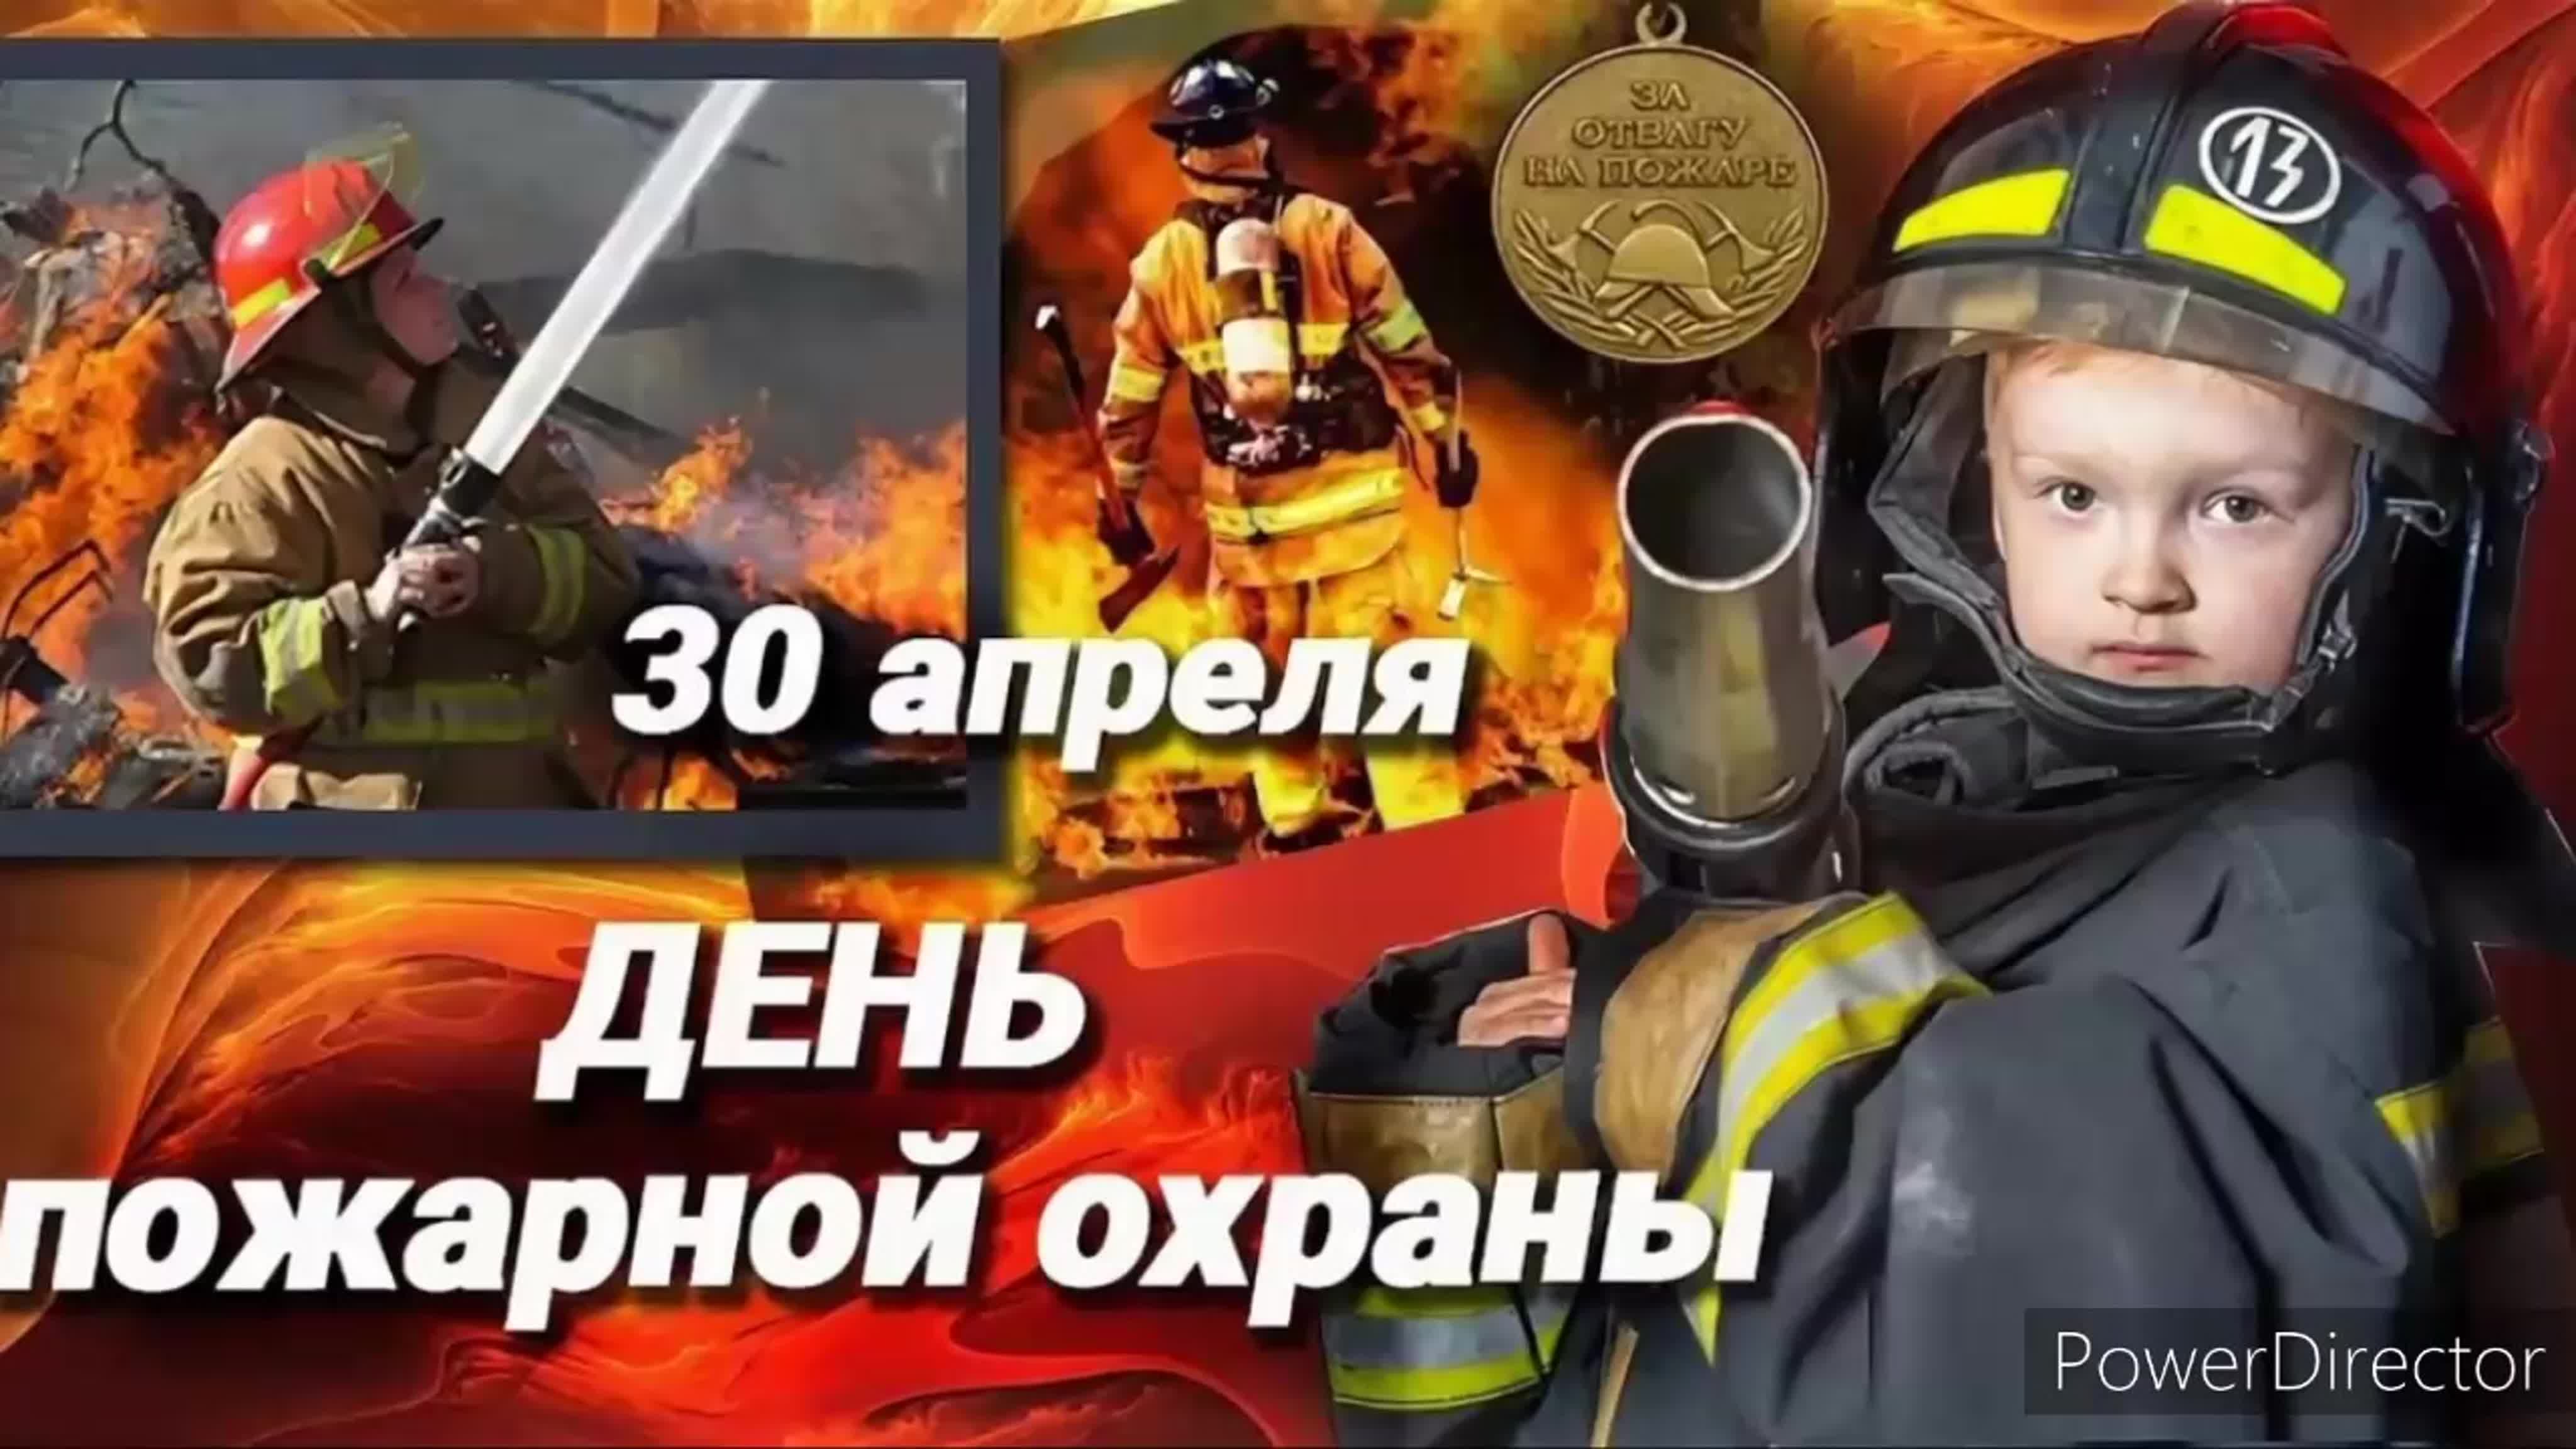 Какой праздник будет 30 апреля. С днем пожарной охраны. 30 Апреля день пожарной охраны России. С днем пожарной охраны поздравление. С днем пожарной охраны 30 апреля.